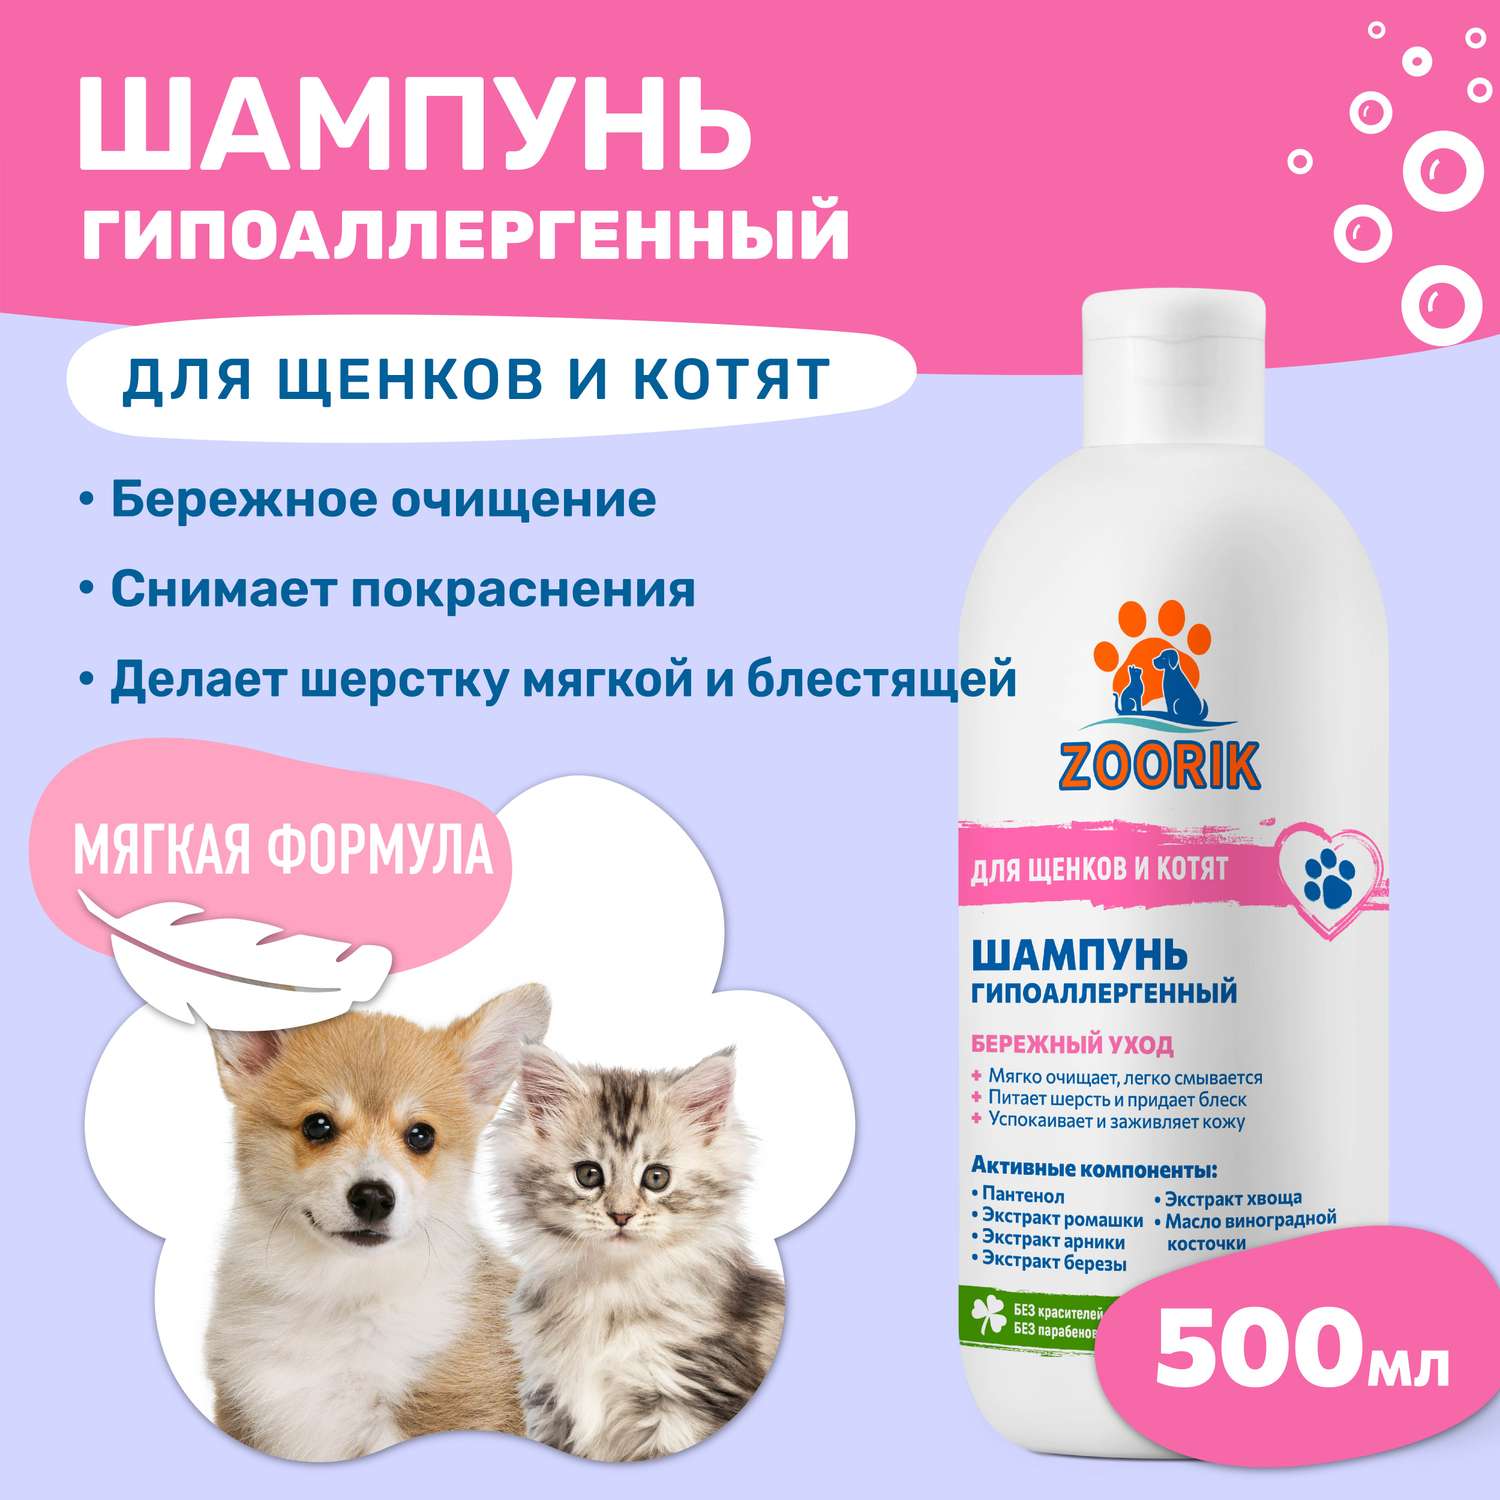 Шампунь ZOORIK для щенков и котят гипоаллергенный 500 мл - фото 2